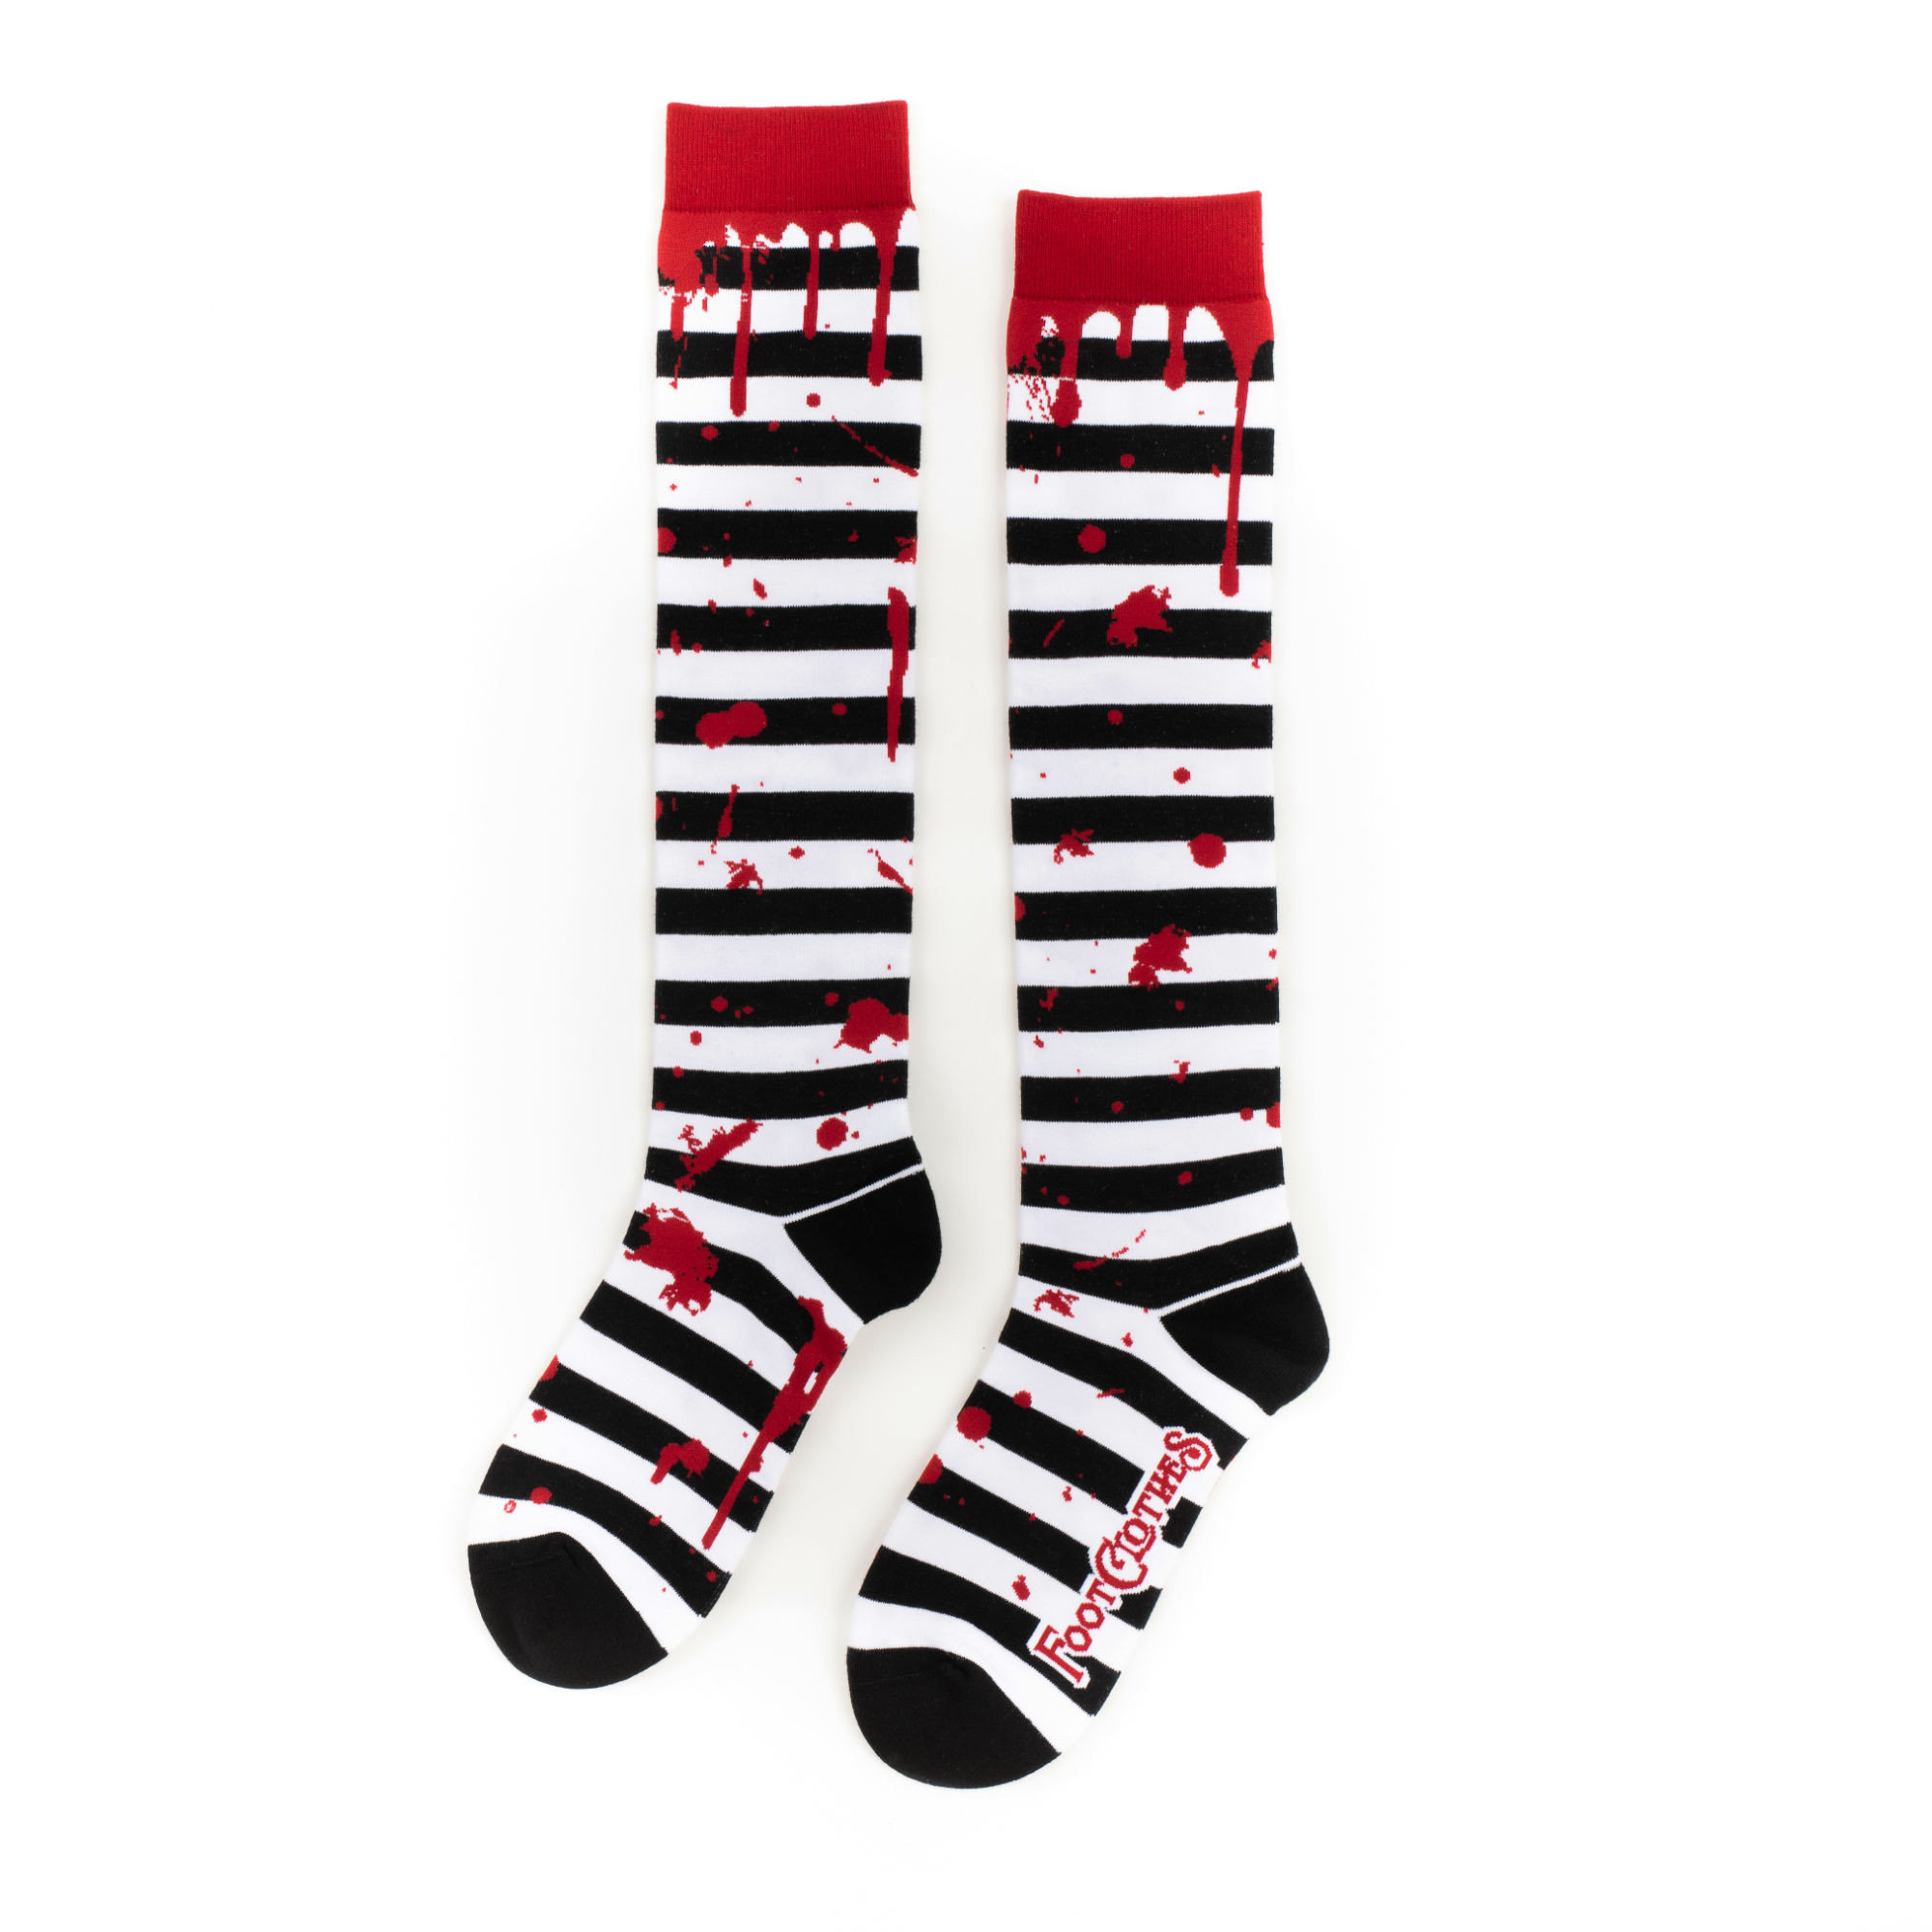 Sanguine Stripes Blood Spatter Knee High Socks